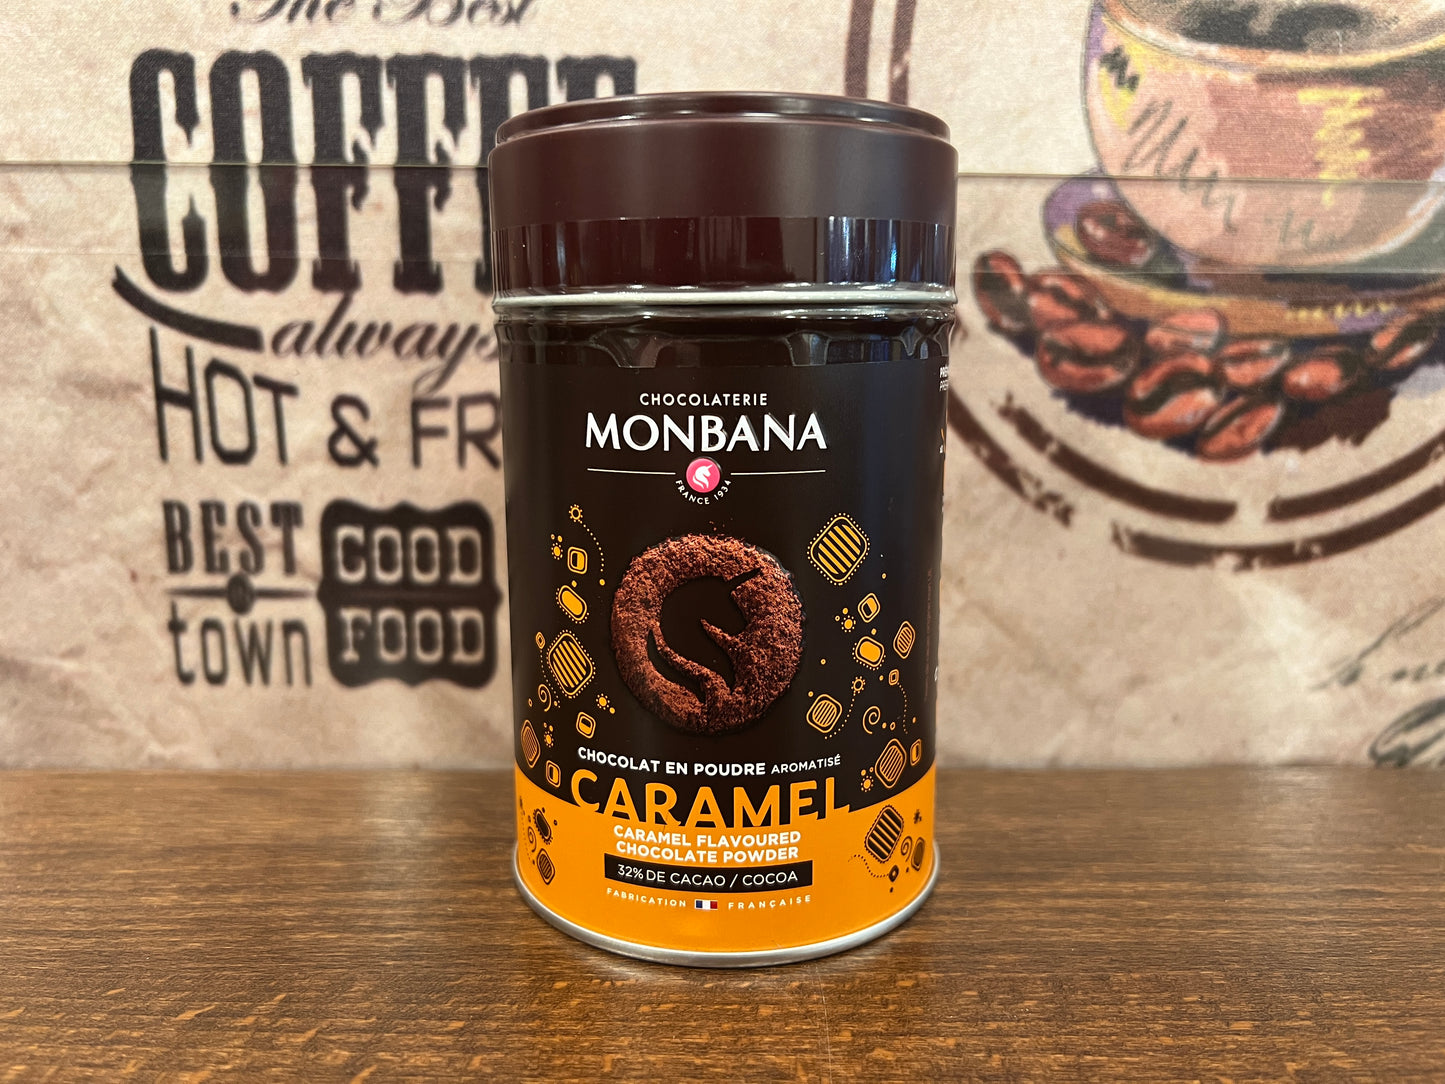 Monbana 32% Caramel